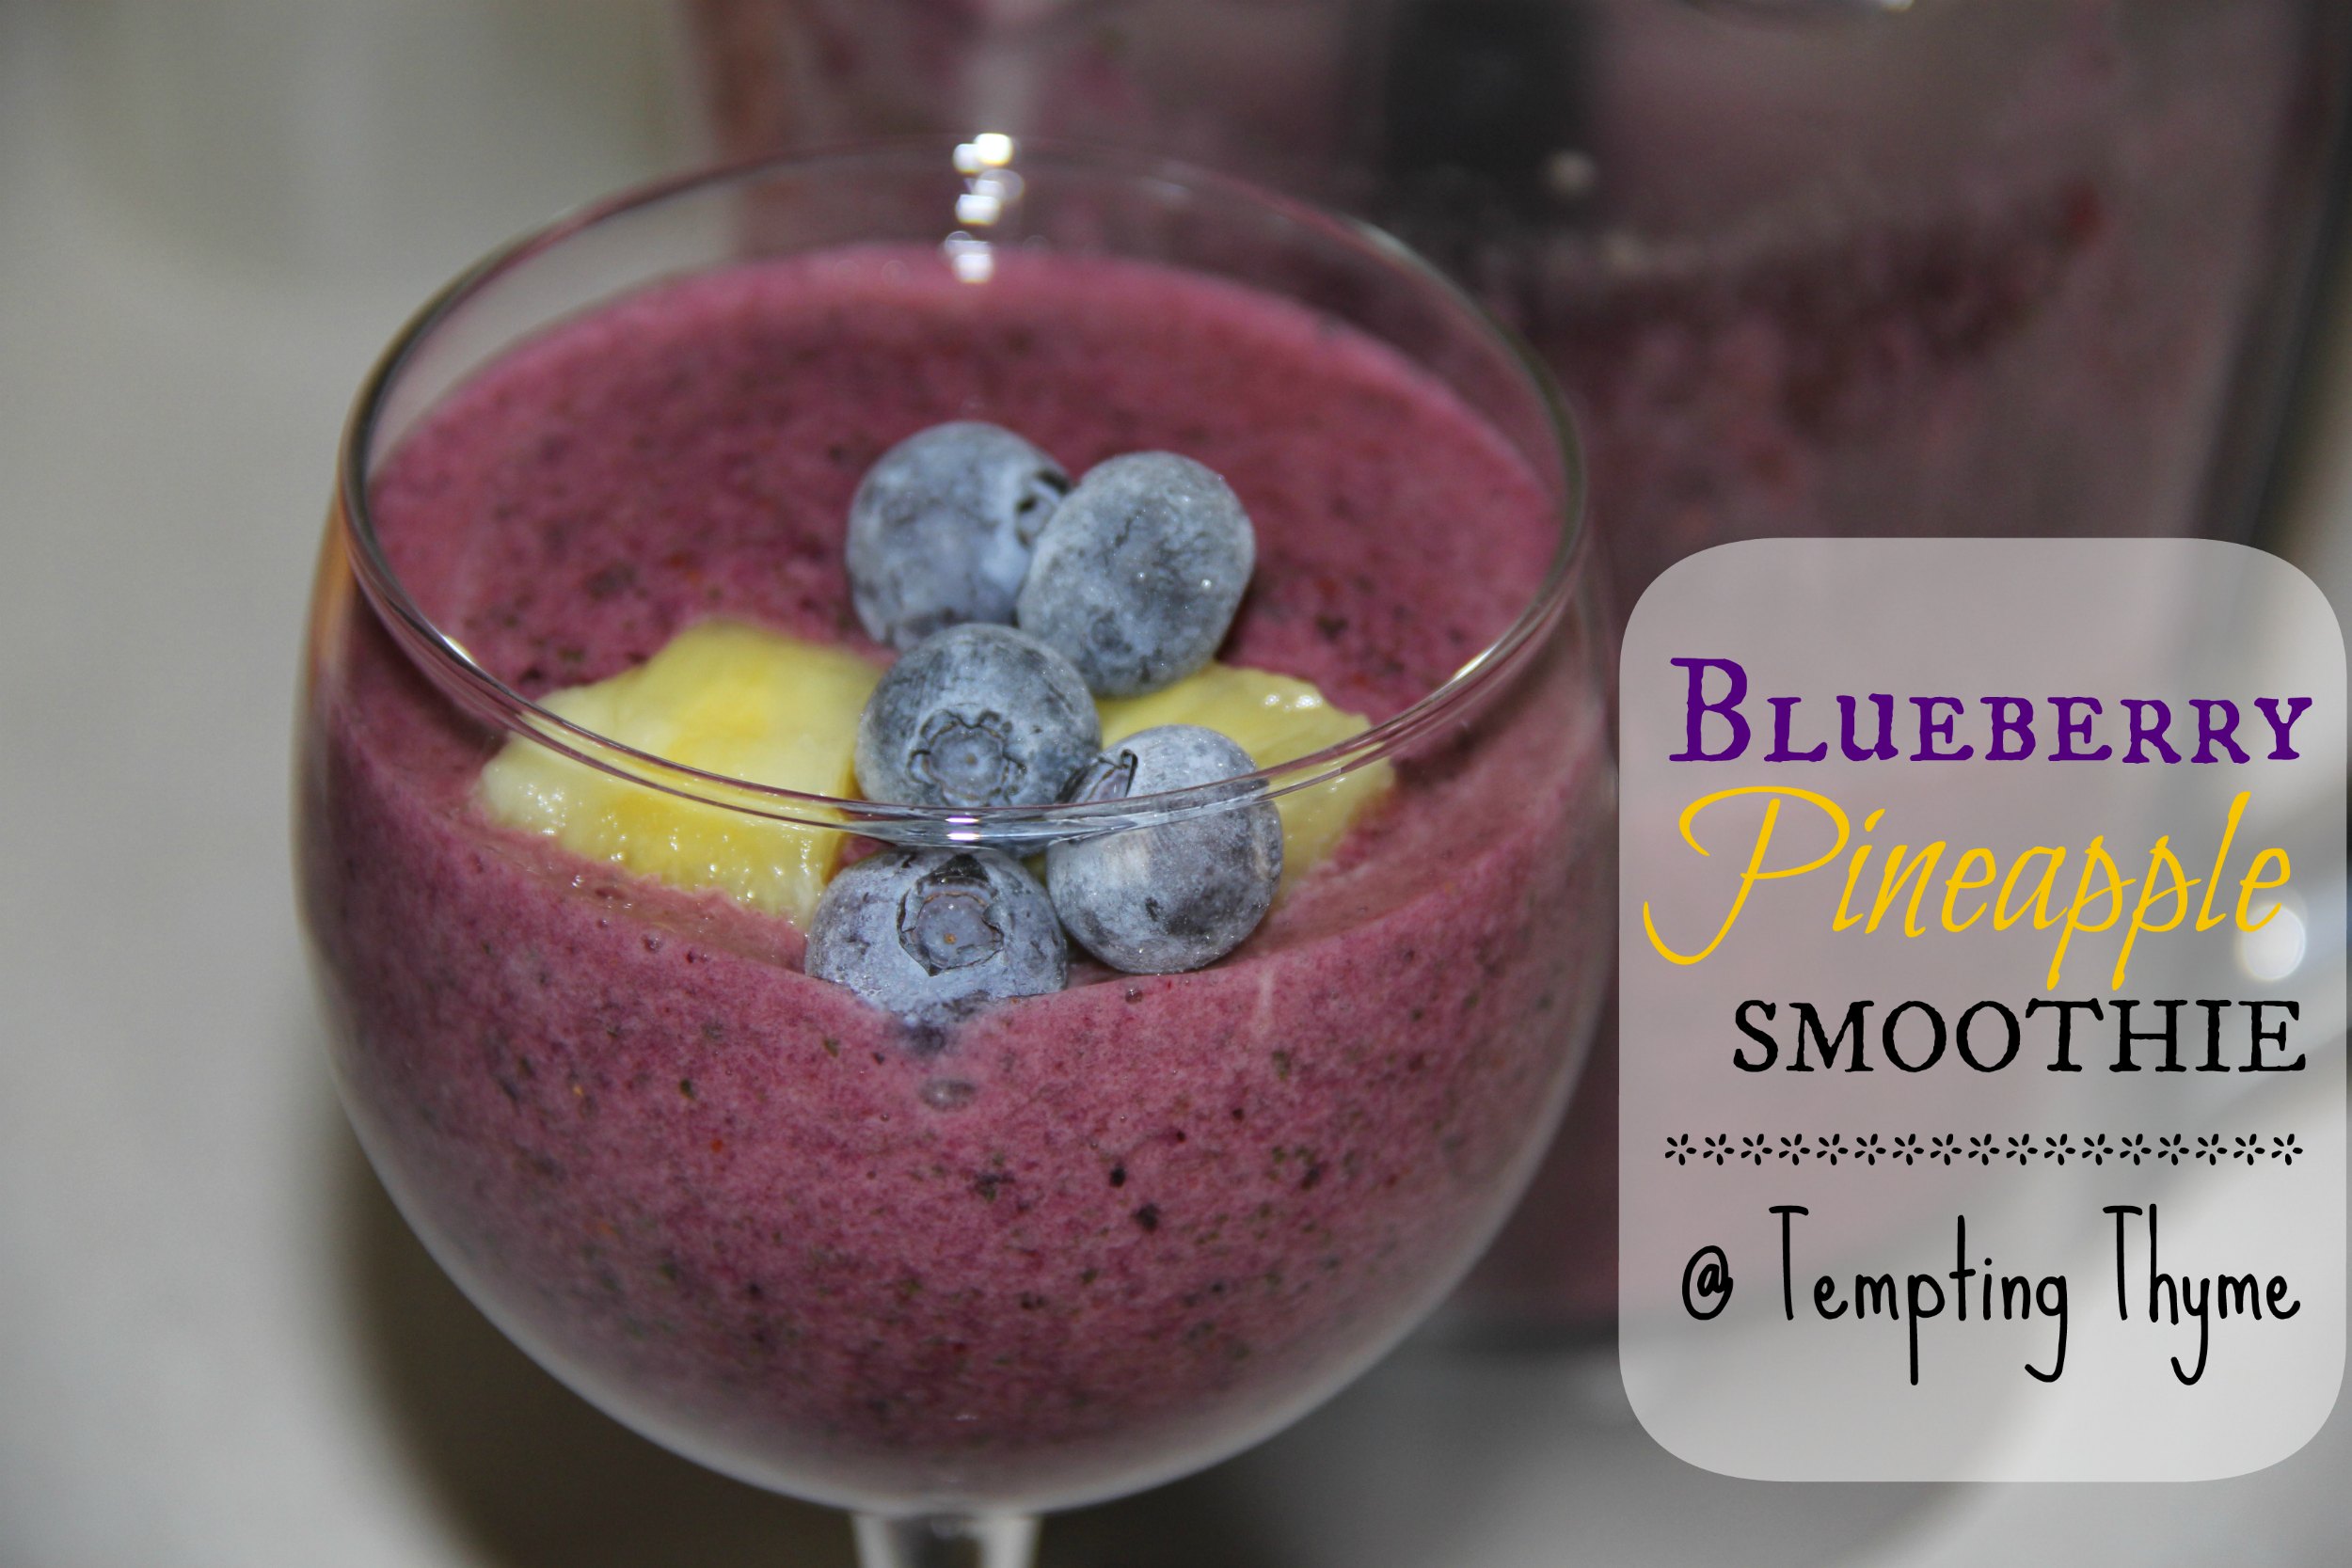 Смузи 2. Blueberry Smoothie пилинг. Pineapple Blueberry. Lemon-Thyme Blueberry Smoothie.